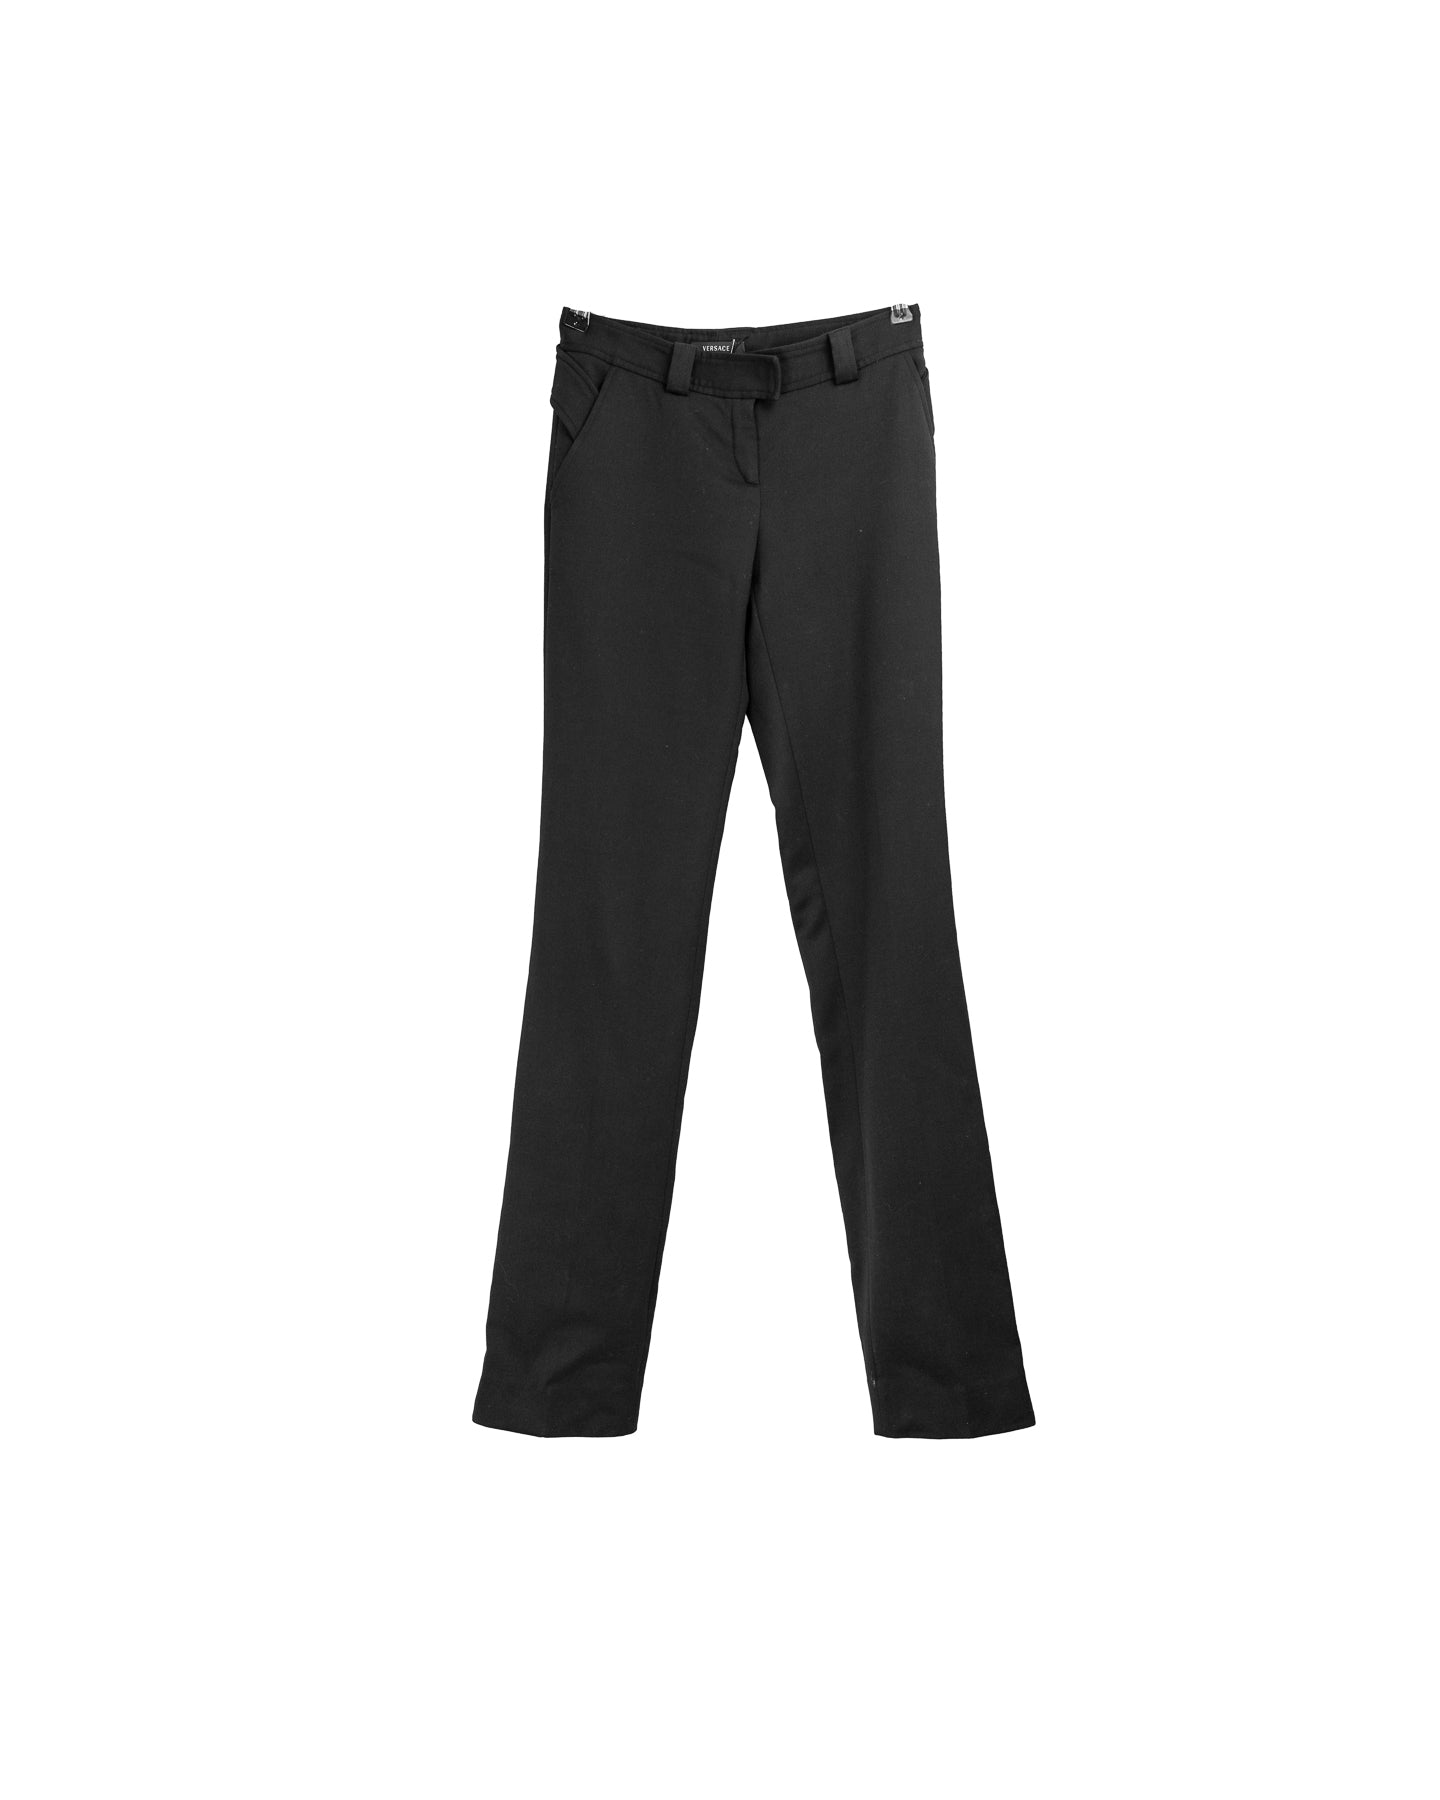 Versace Classic Pantalon noir taille haute - taille 38